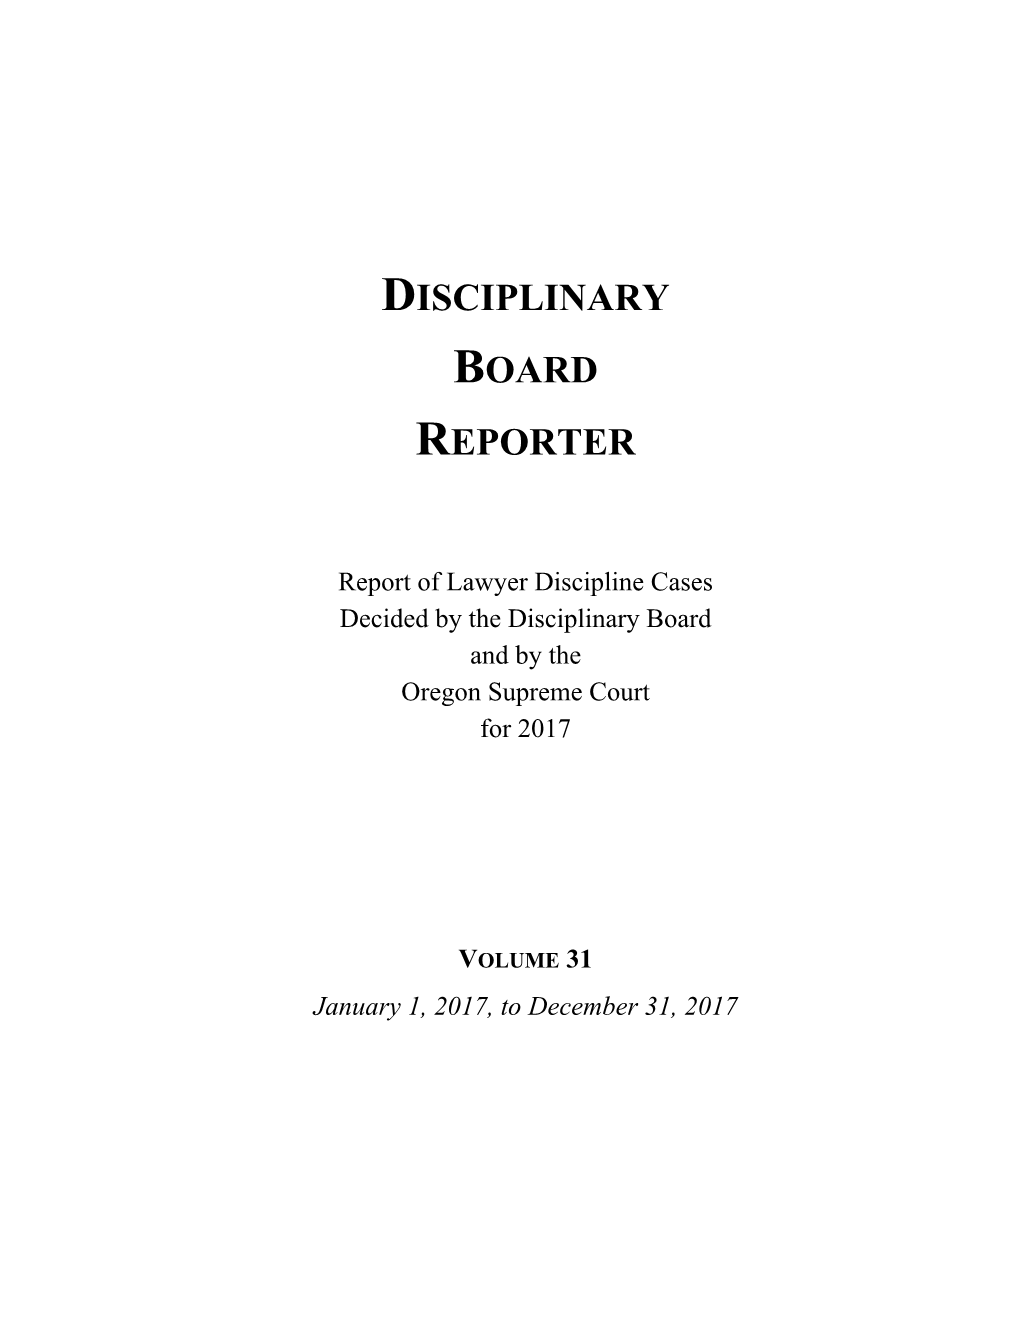 Disciplinary Board Reporter